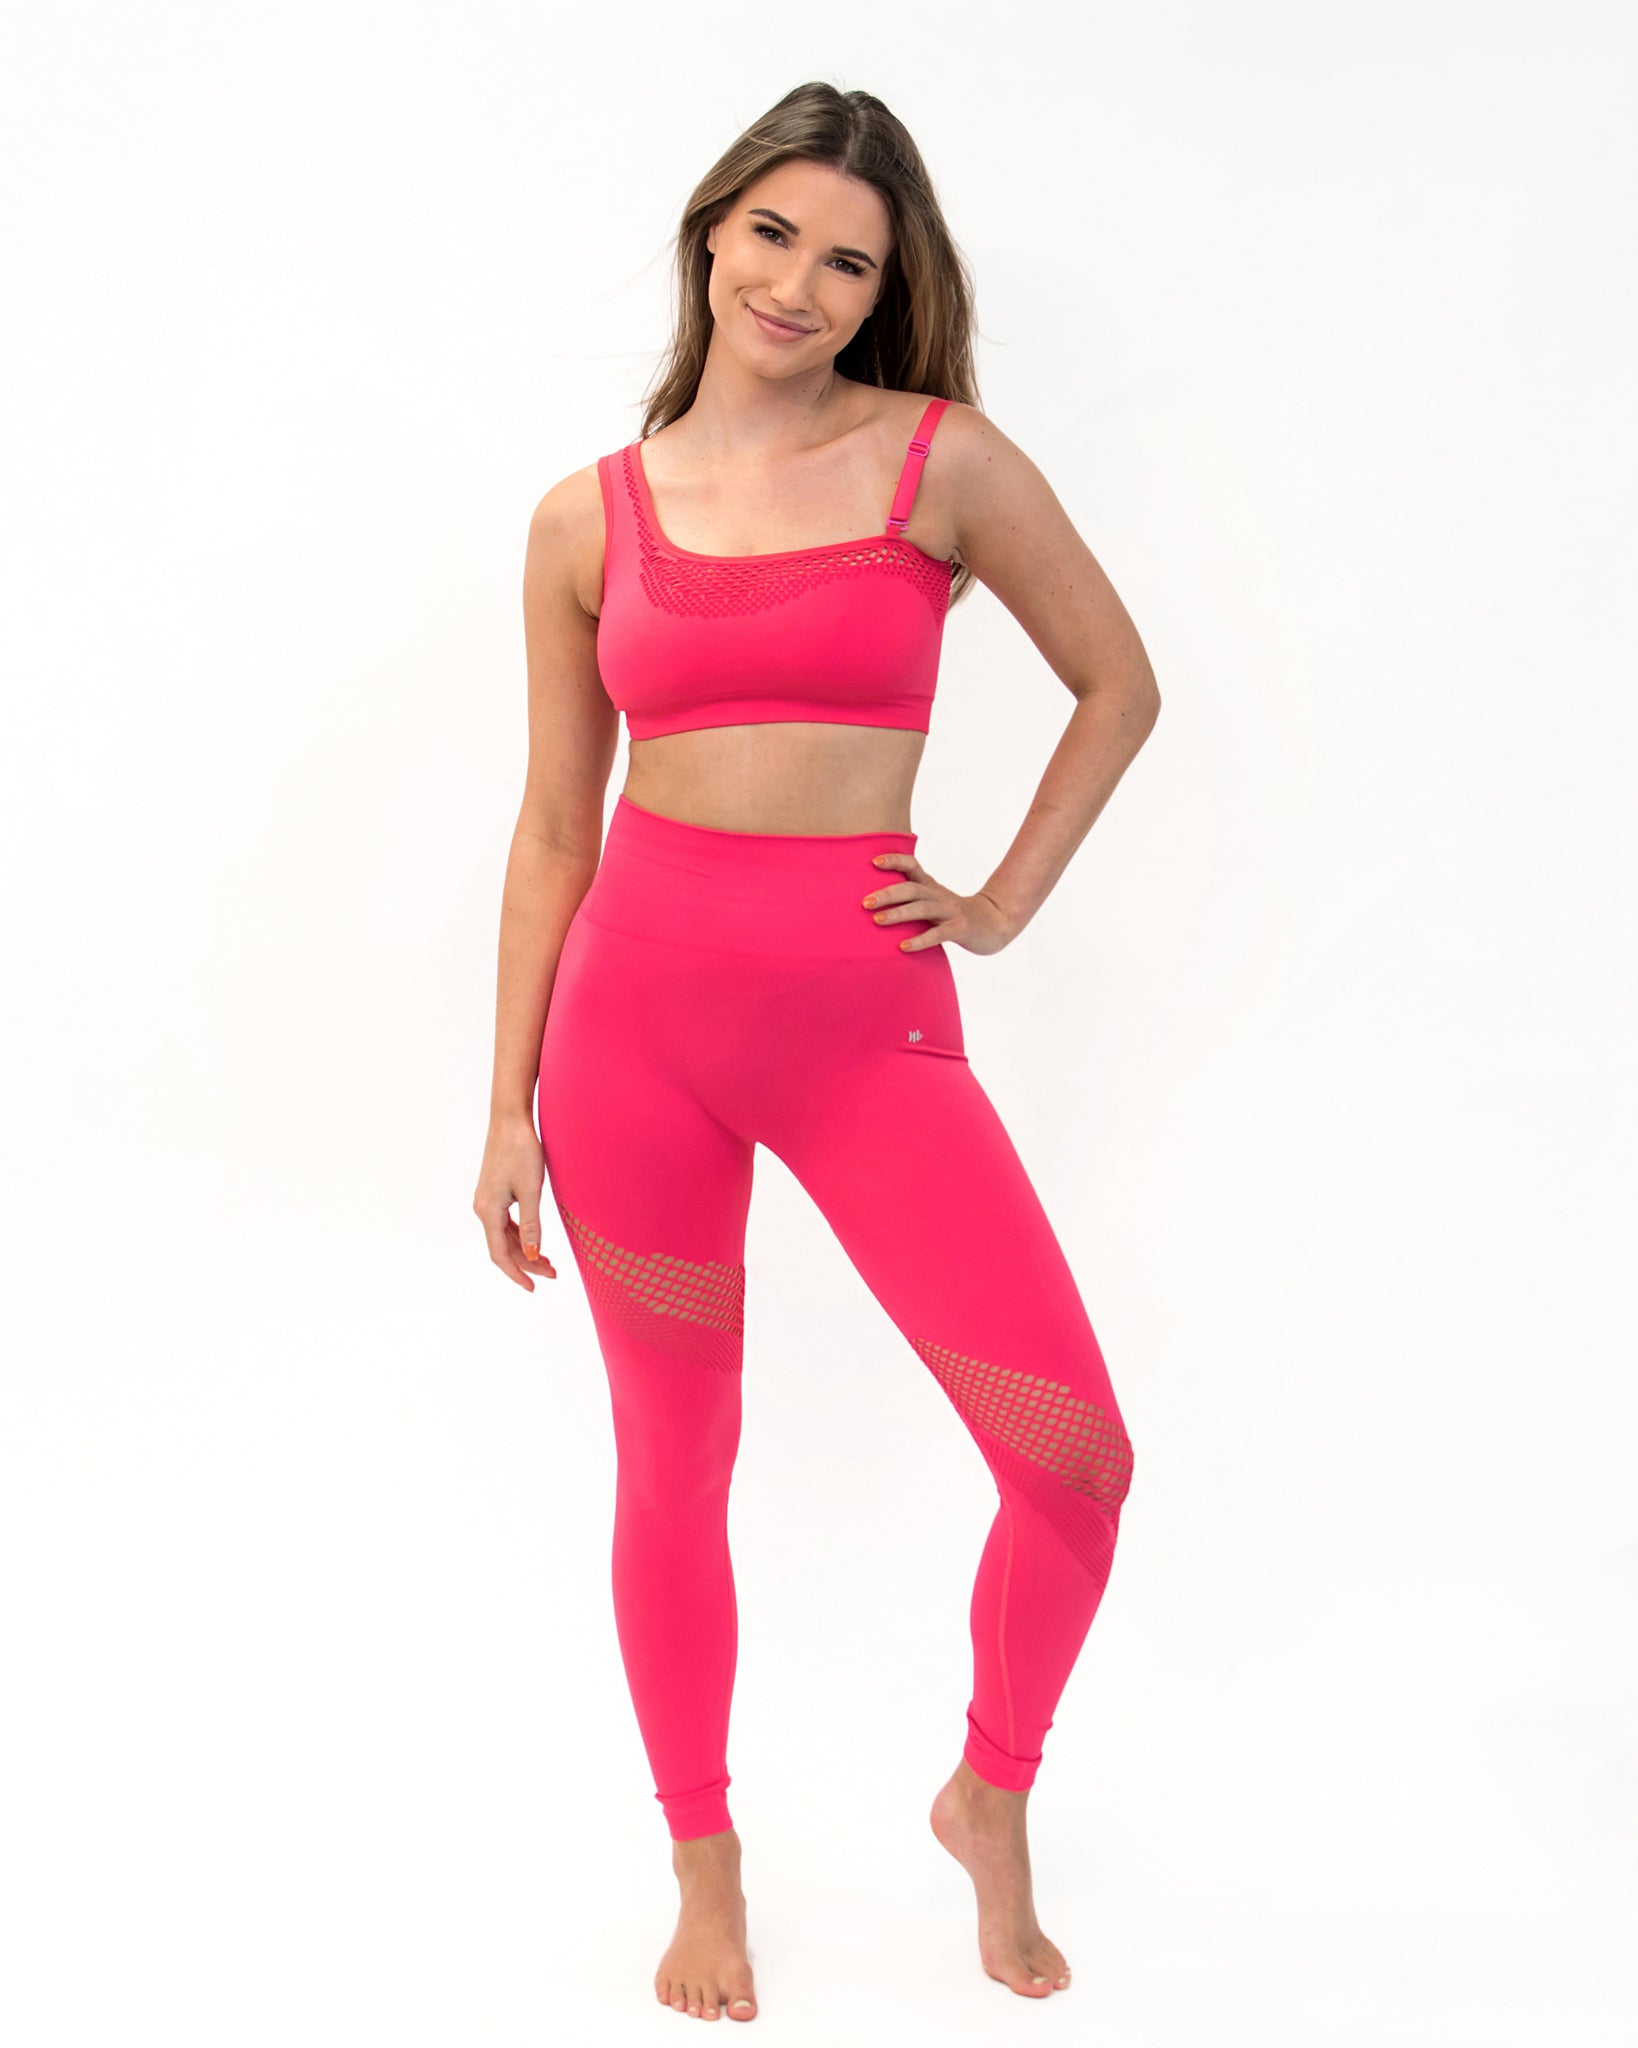 Zena Convertible Strap Sports Bra (2 colors) - Nikkib Sportswear